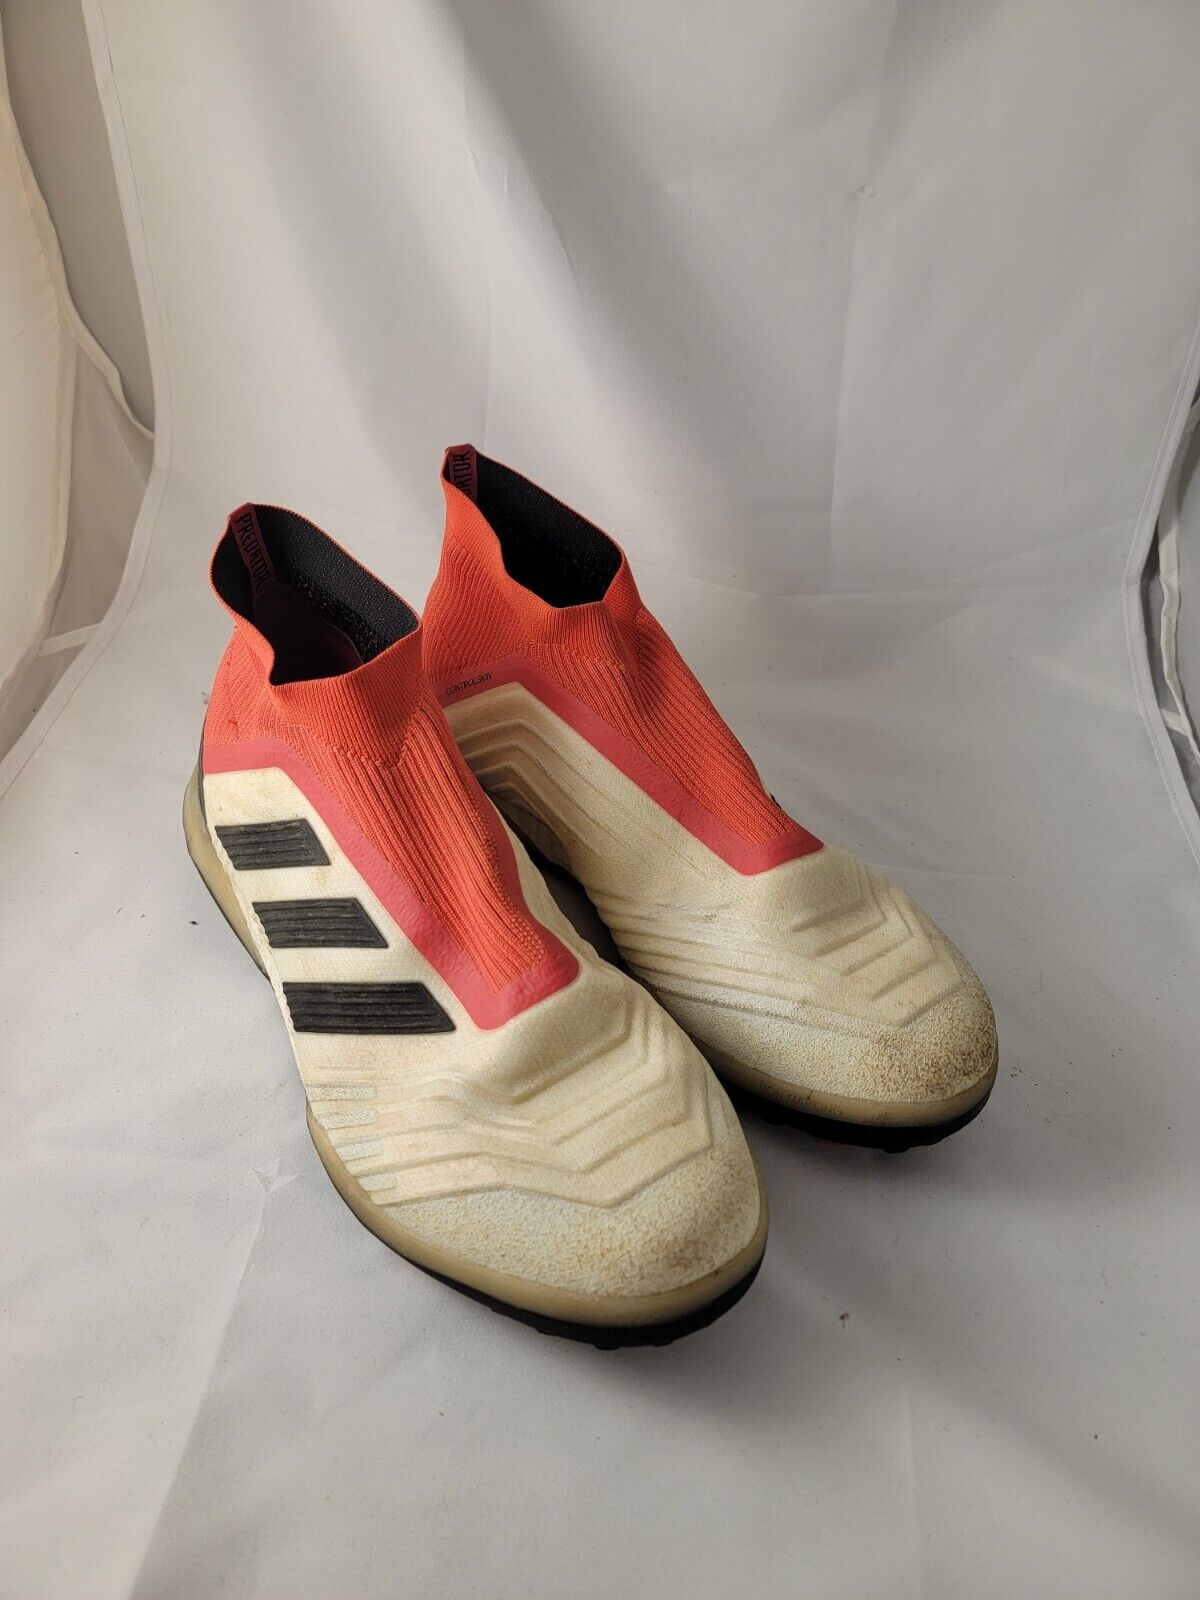 Ejecutante Confuso lealtad Adidas Predator Control Skin Master Control Soccer shoes male sz 12. AG  Turf | eBay